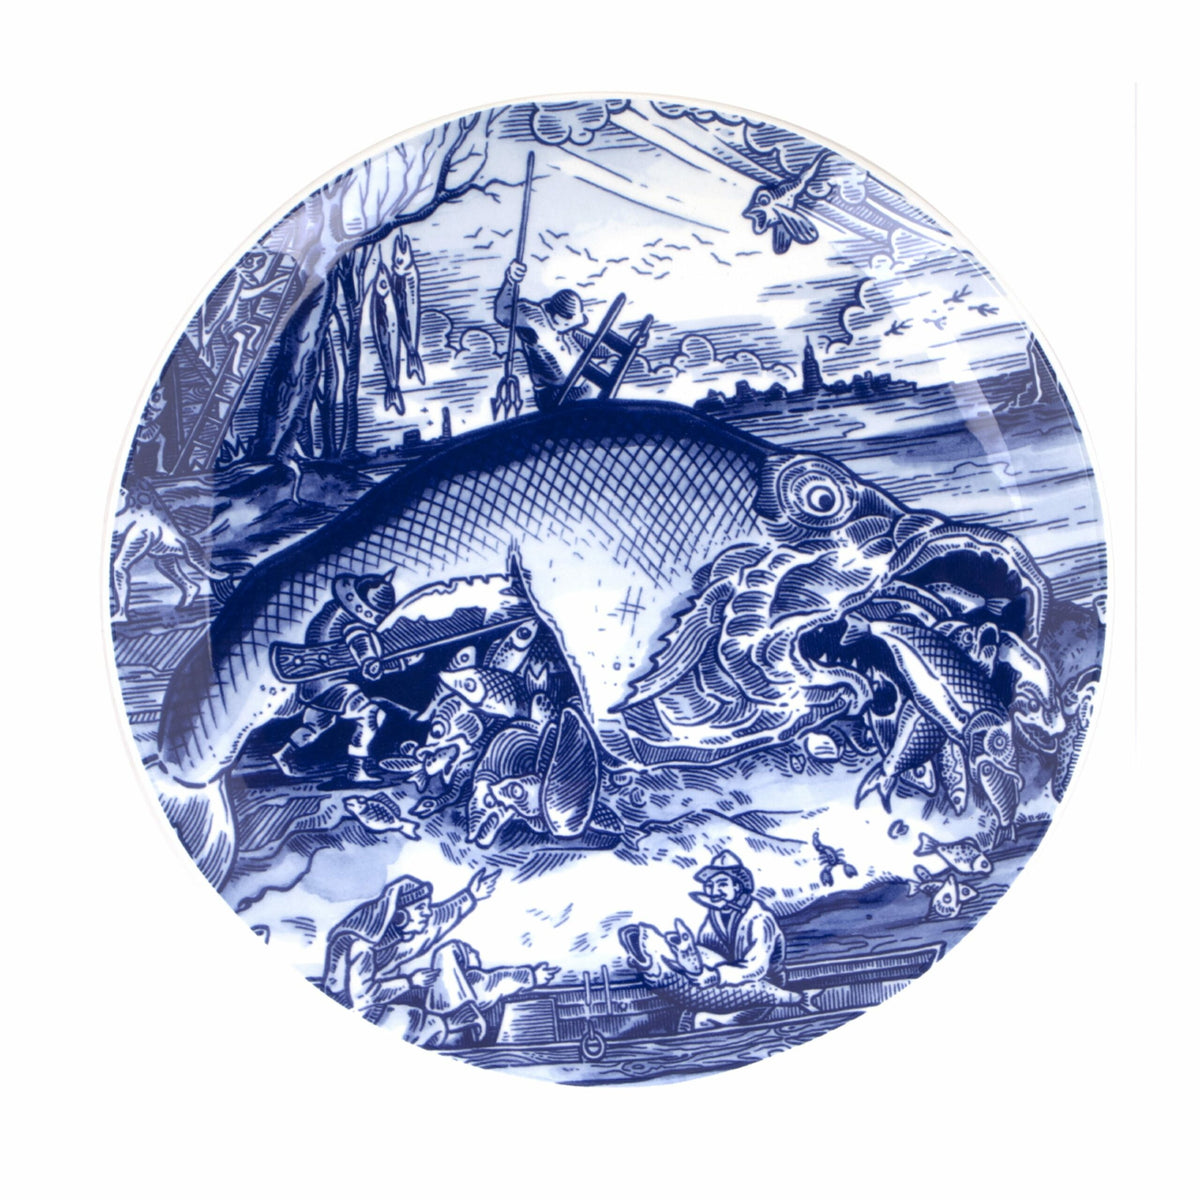 Pisces Bruegel Plate - Schiffmacher Royal Blue Tattoo by Royal Delft